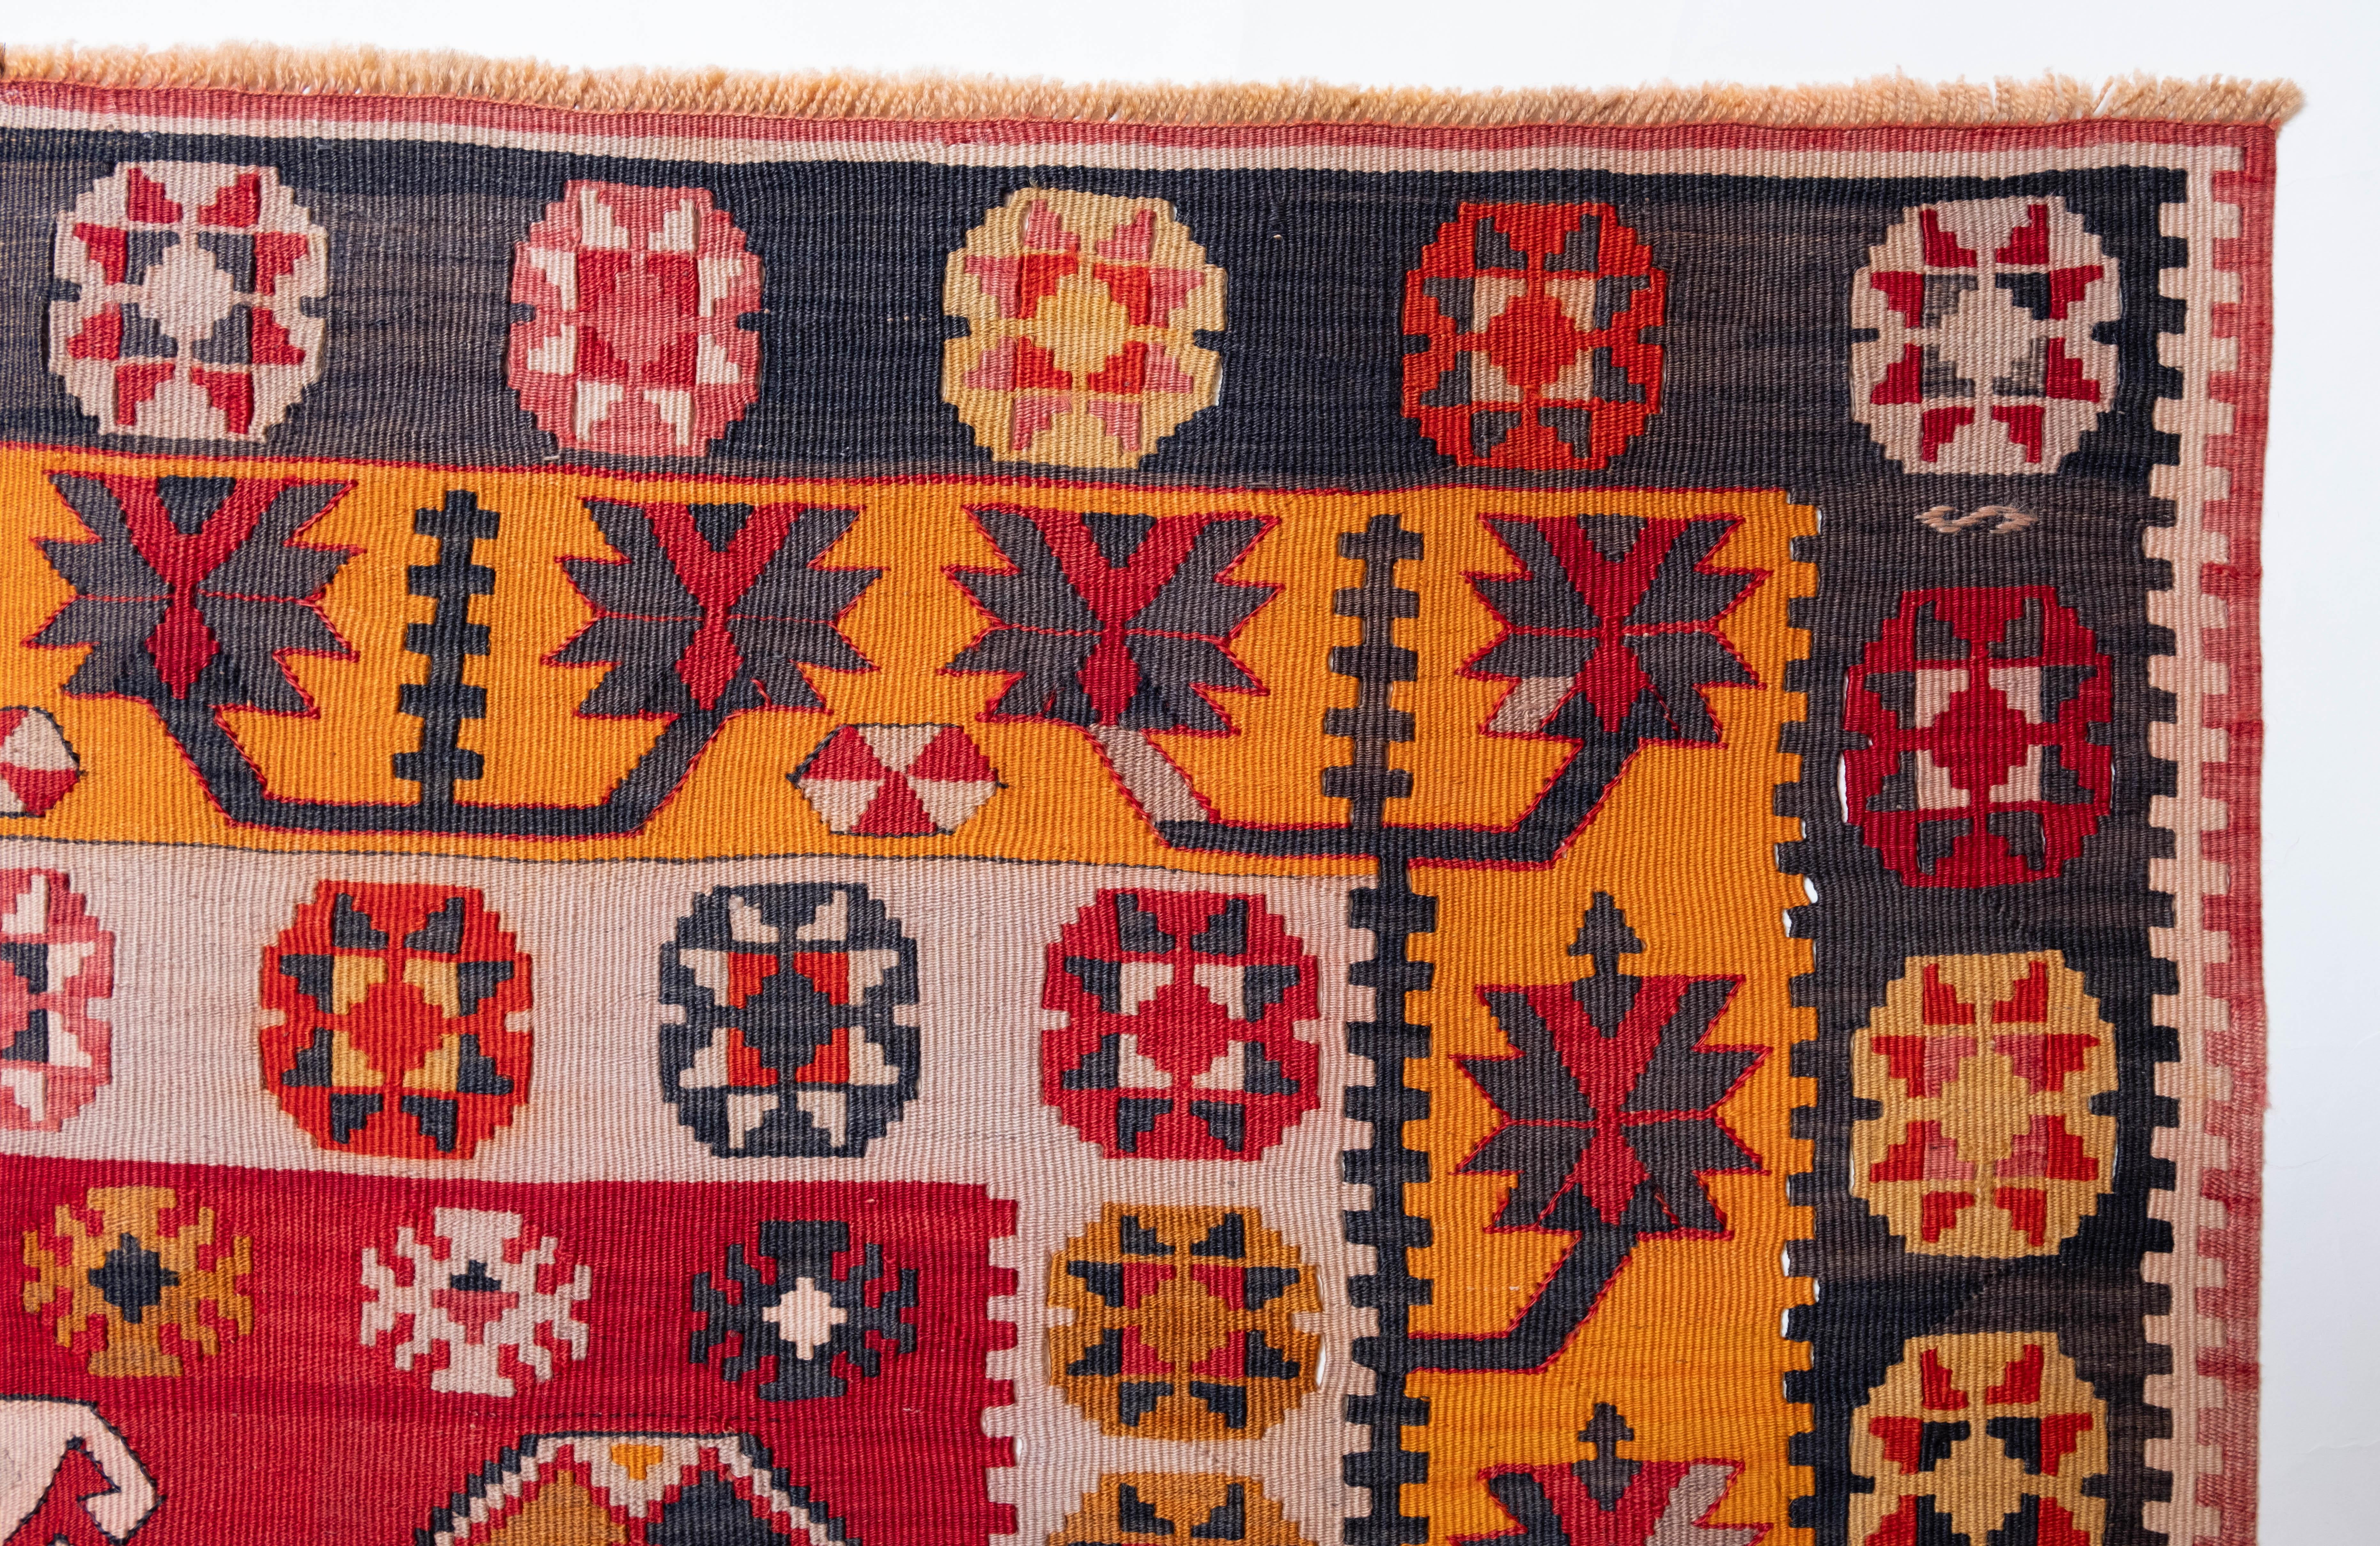 Il s'agit d'un kilim ancien d'Anatolie centrale provenant de la région de Corum et présentant une composition de couleurs rare et magnifique.

Ce kilim antique de grande collection présente de merveilleuses couleurs et textures particulières,